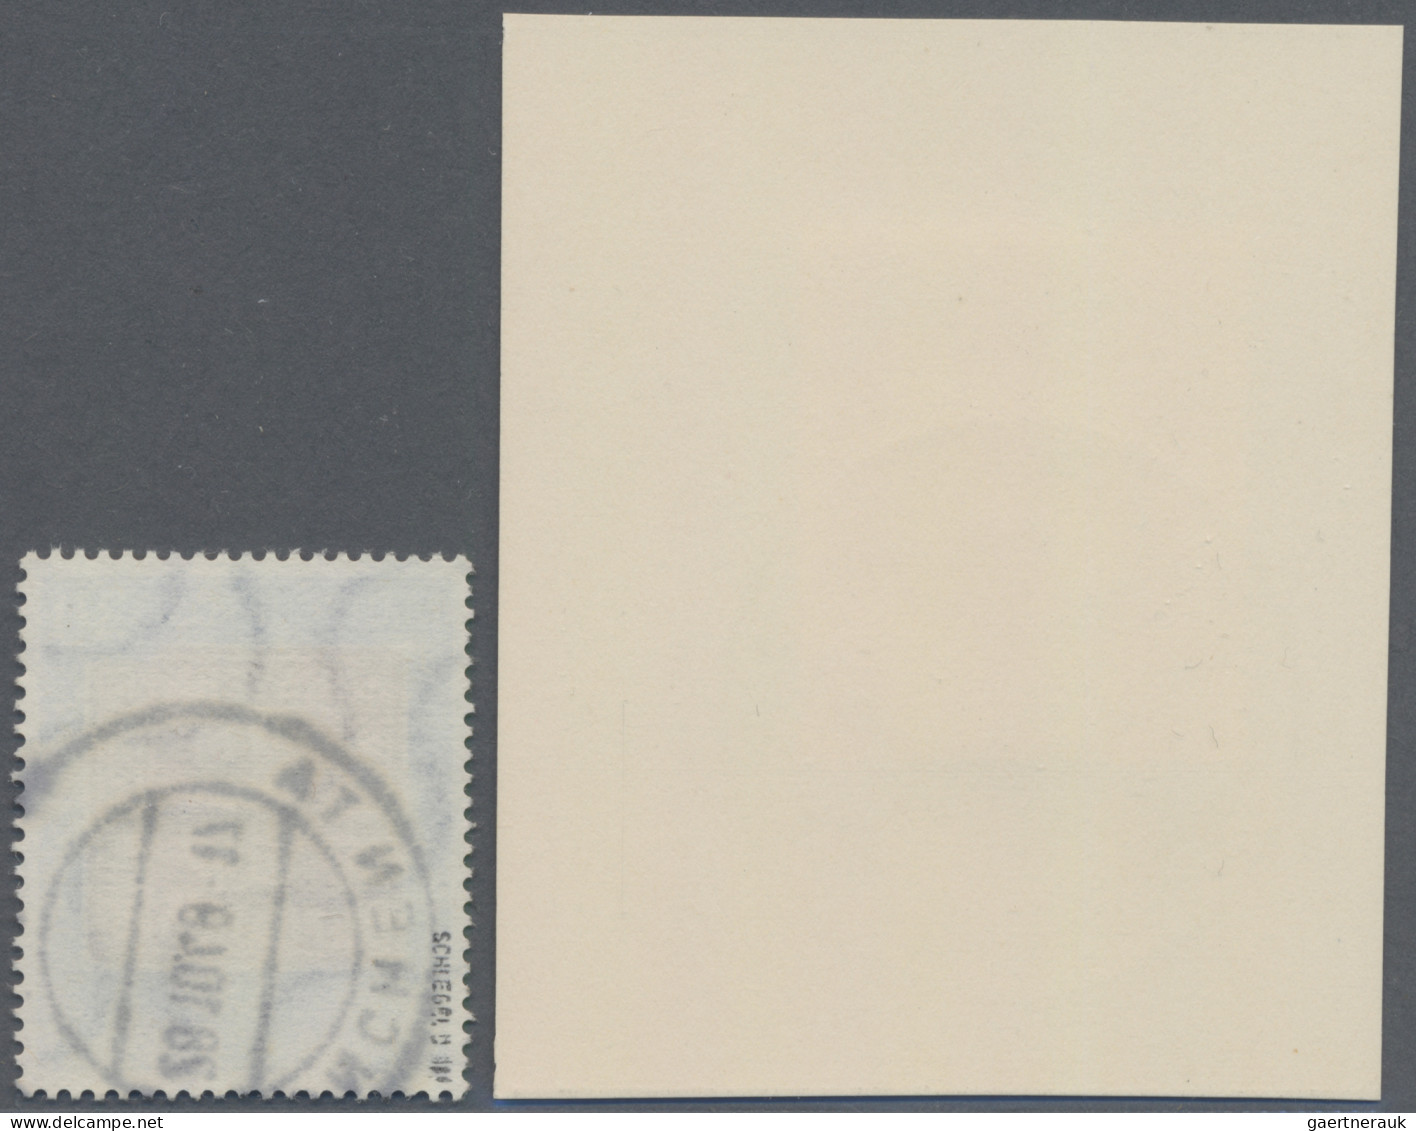 Bundesrepublik Deutschland: 1949, 30 Pfg. 100 Jahre Deutsche Briefmarken, Platte - Oblitérés